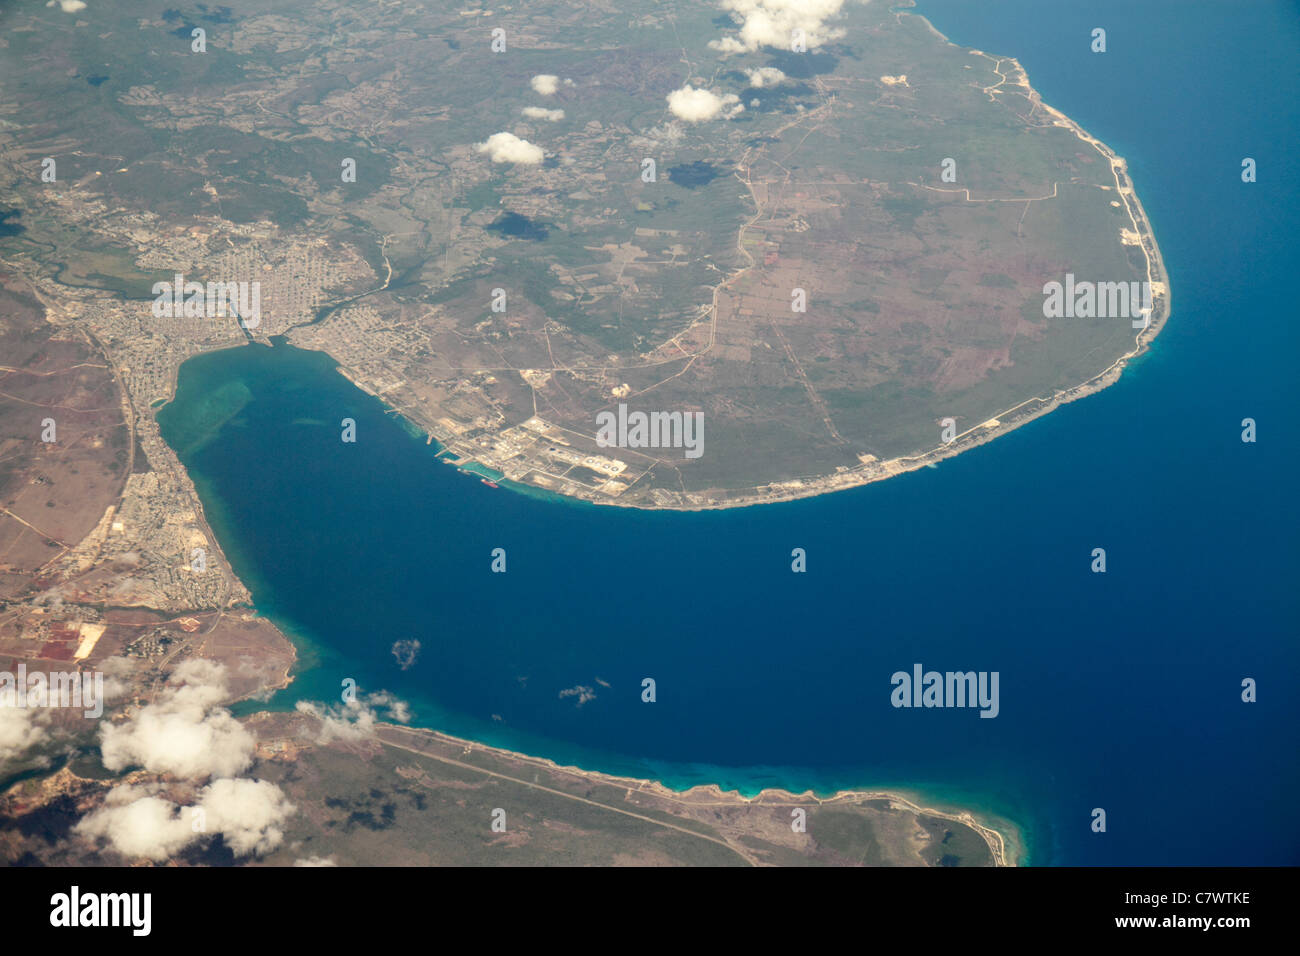 Kuba, Matanzas, Karibisches Meer, Wasser, Bahia de Matanzas, Bucht, Hafen, Hafen, Luftaufnahme von oben, 35,000 Meter, Land, Wolken, Wasser, Geographie, Topogra Stockfoto